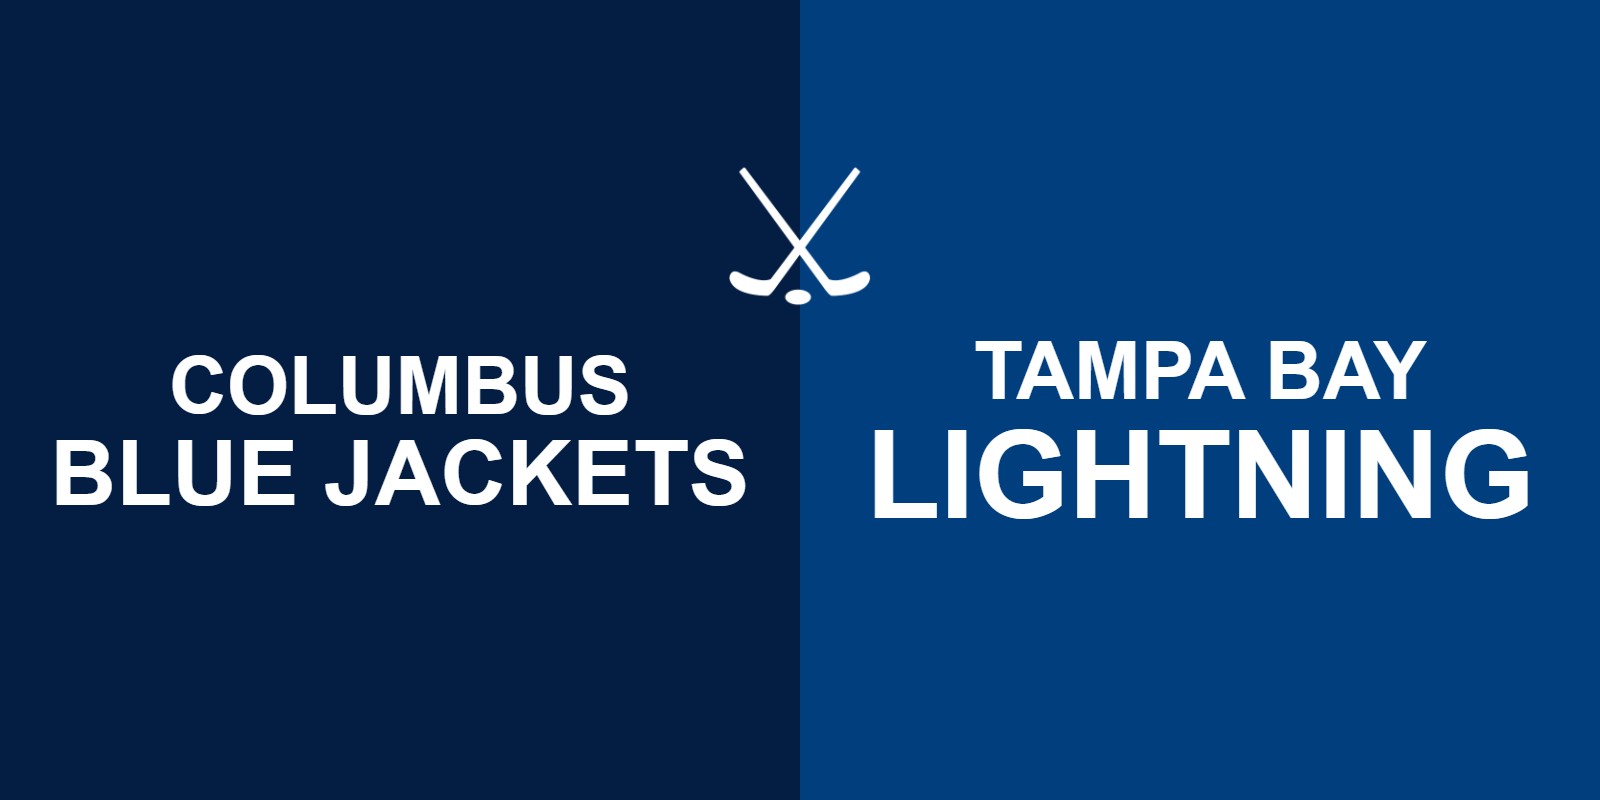 Blue Jackets vs Lightning